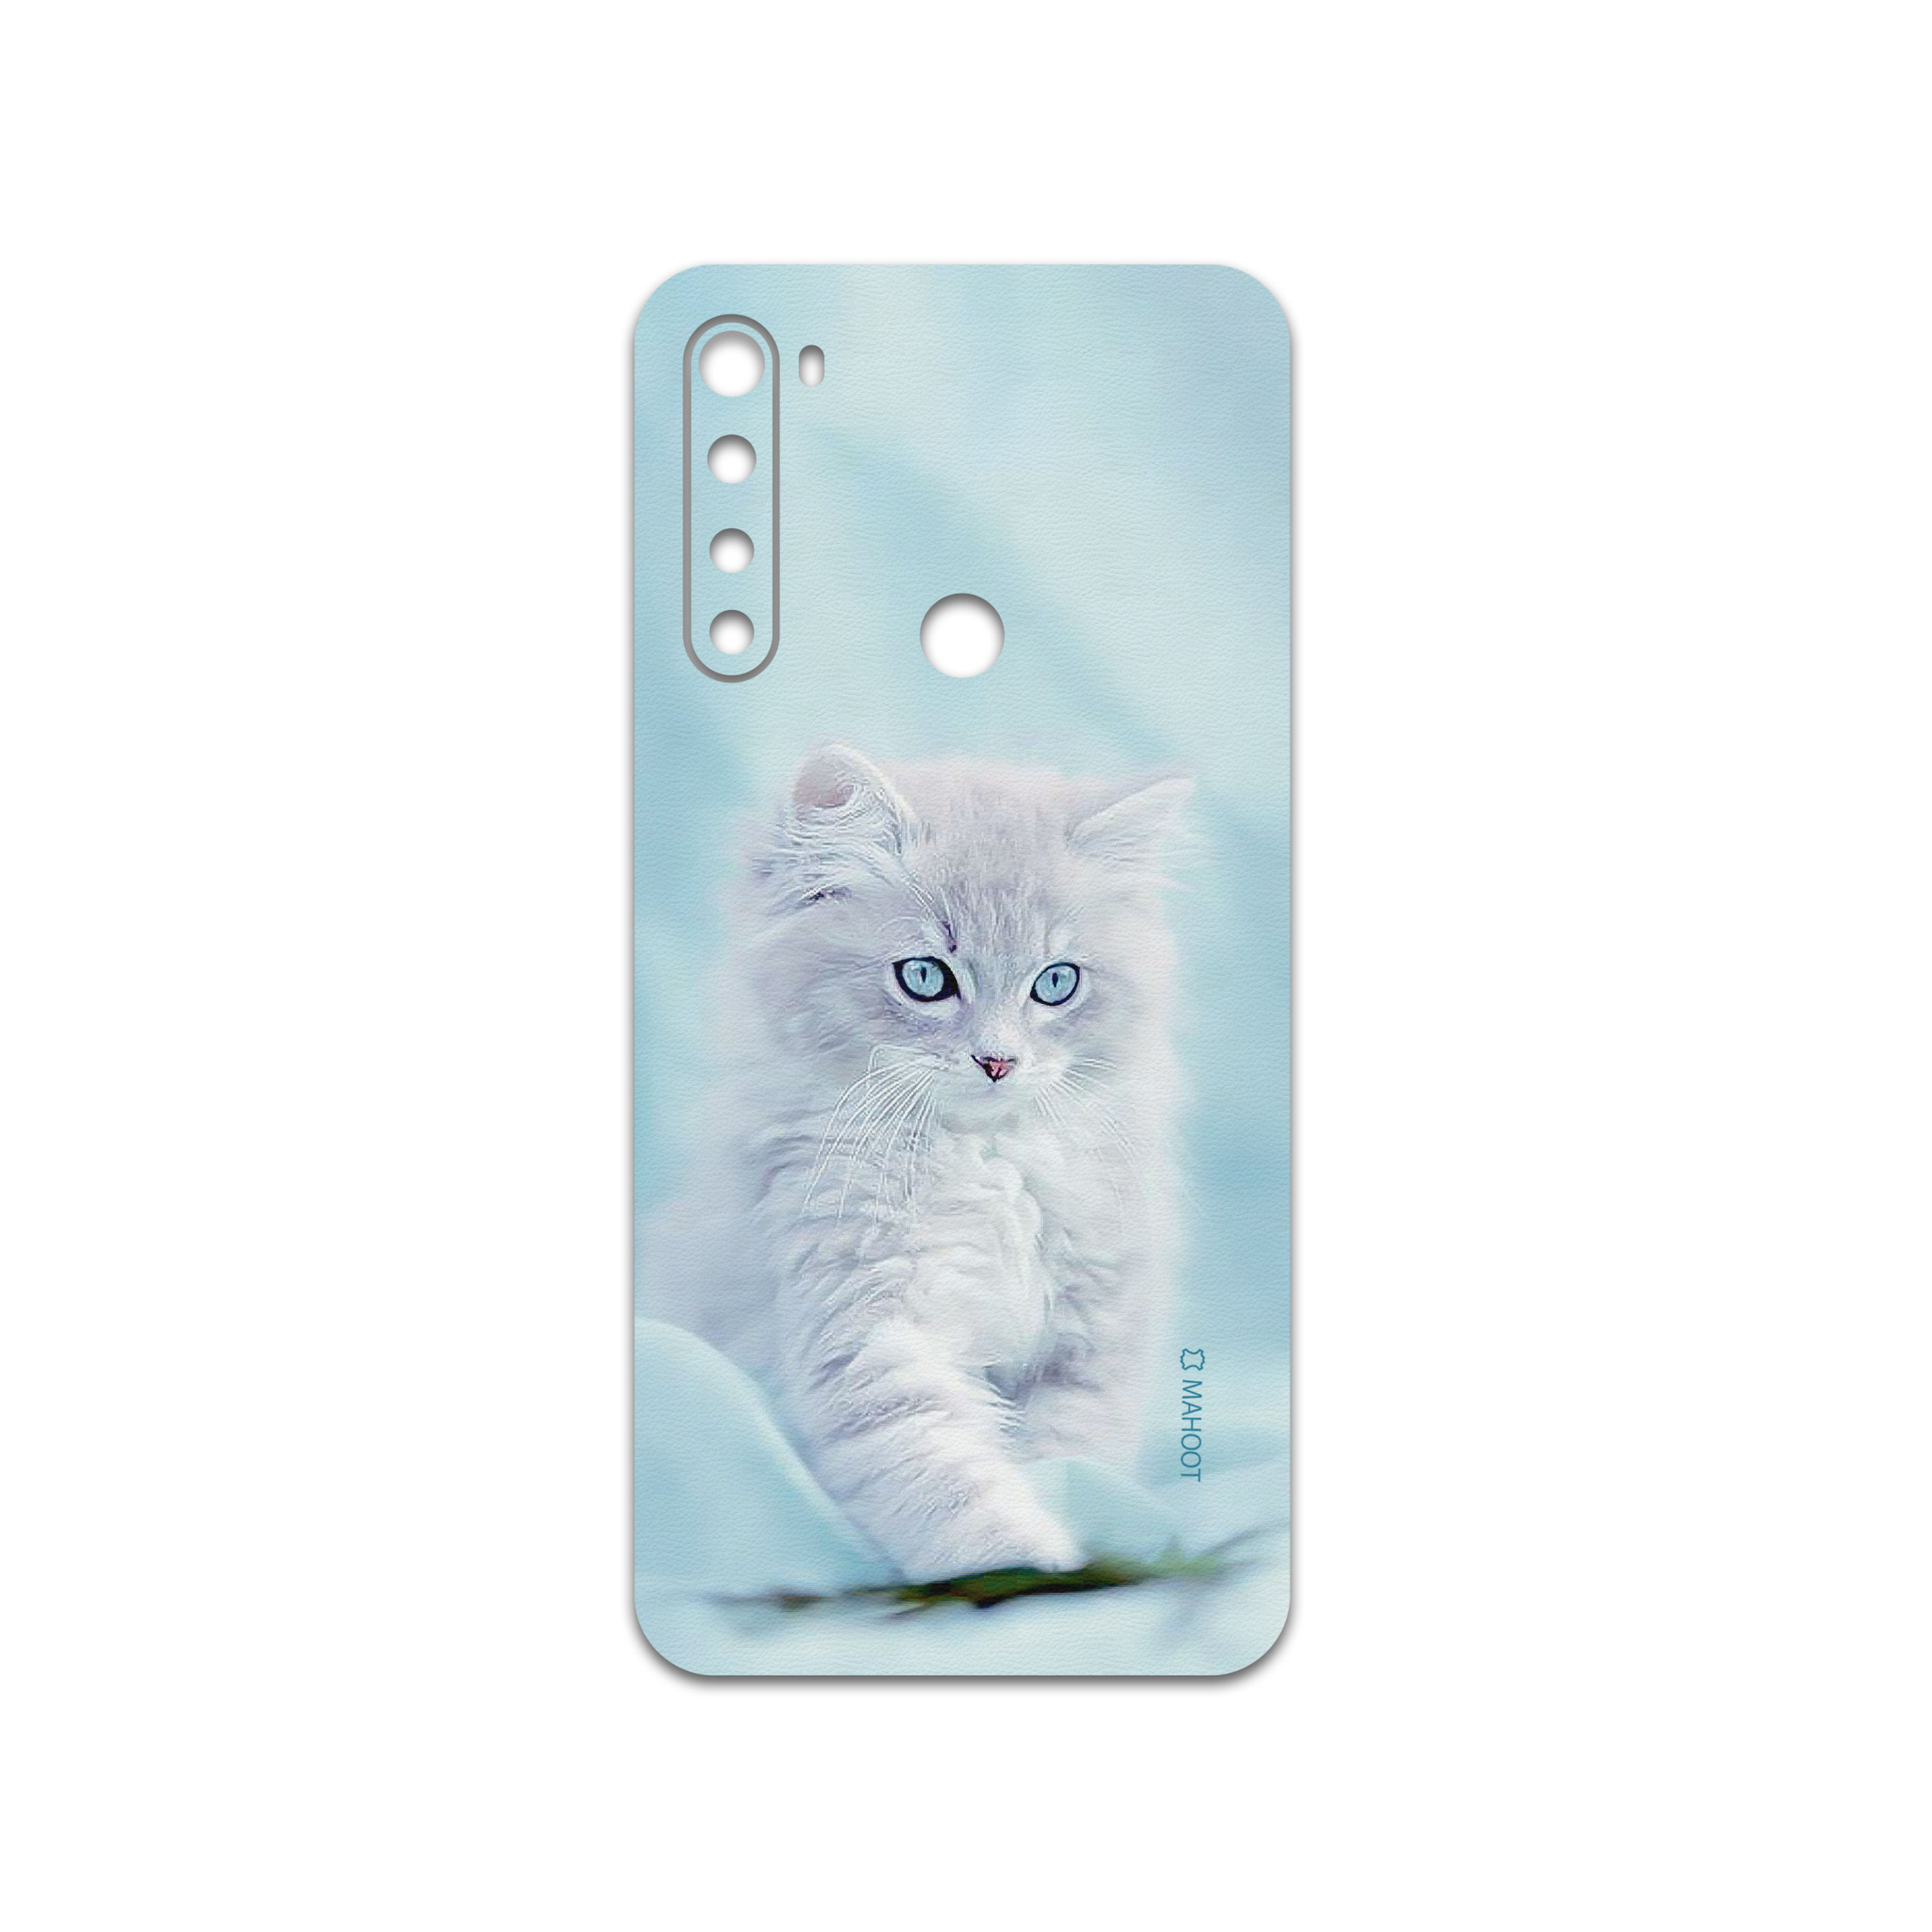 برچسب پوششی ماهوت مدل Cat-1 مناسب برای گوشی موبایل شیائومی Redmi Note 8